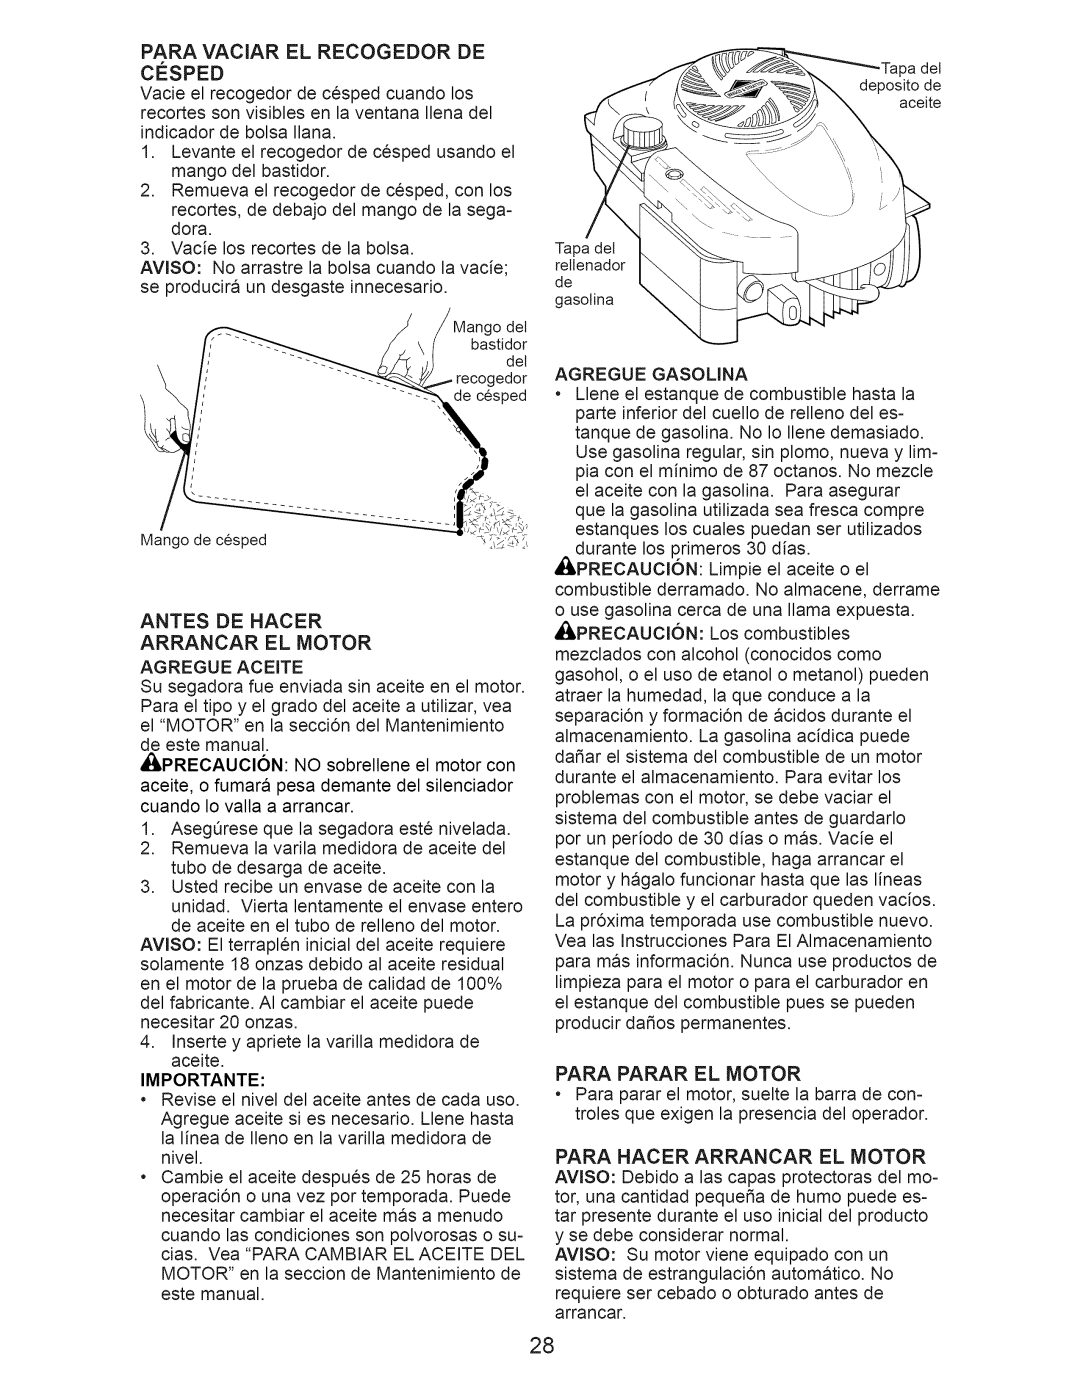 Craftsman 917.374352 owner manual Antes DE Hacer Arrancar EL Motor, Importante, Para Parar EL Motor 